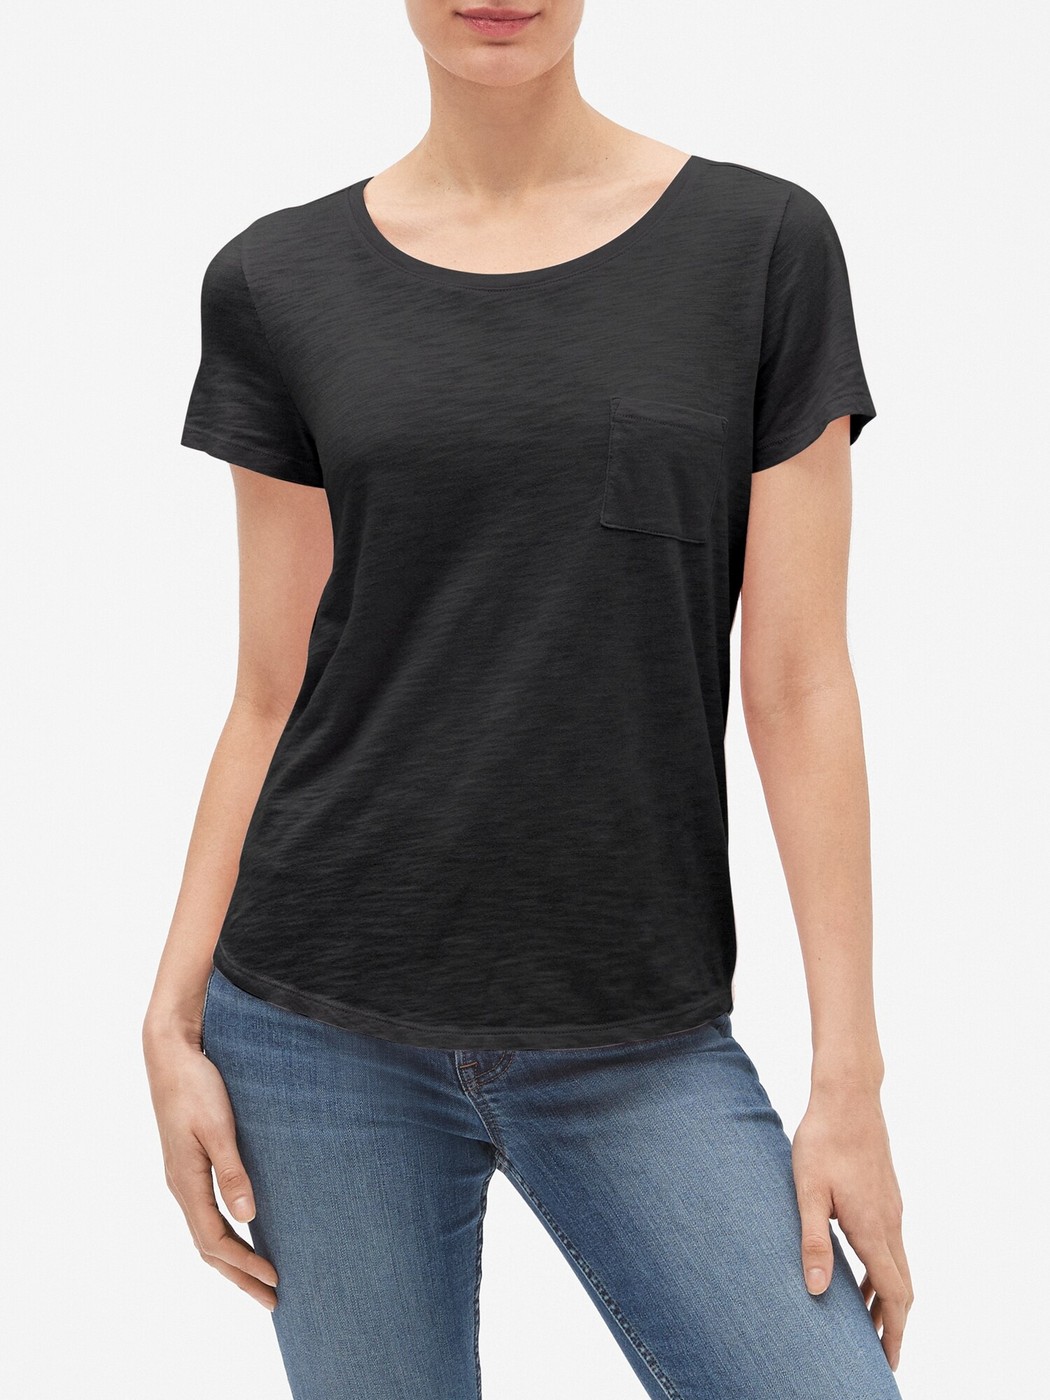 Черная футболка - женская футболка GAP